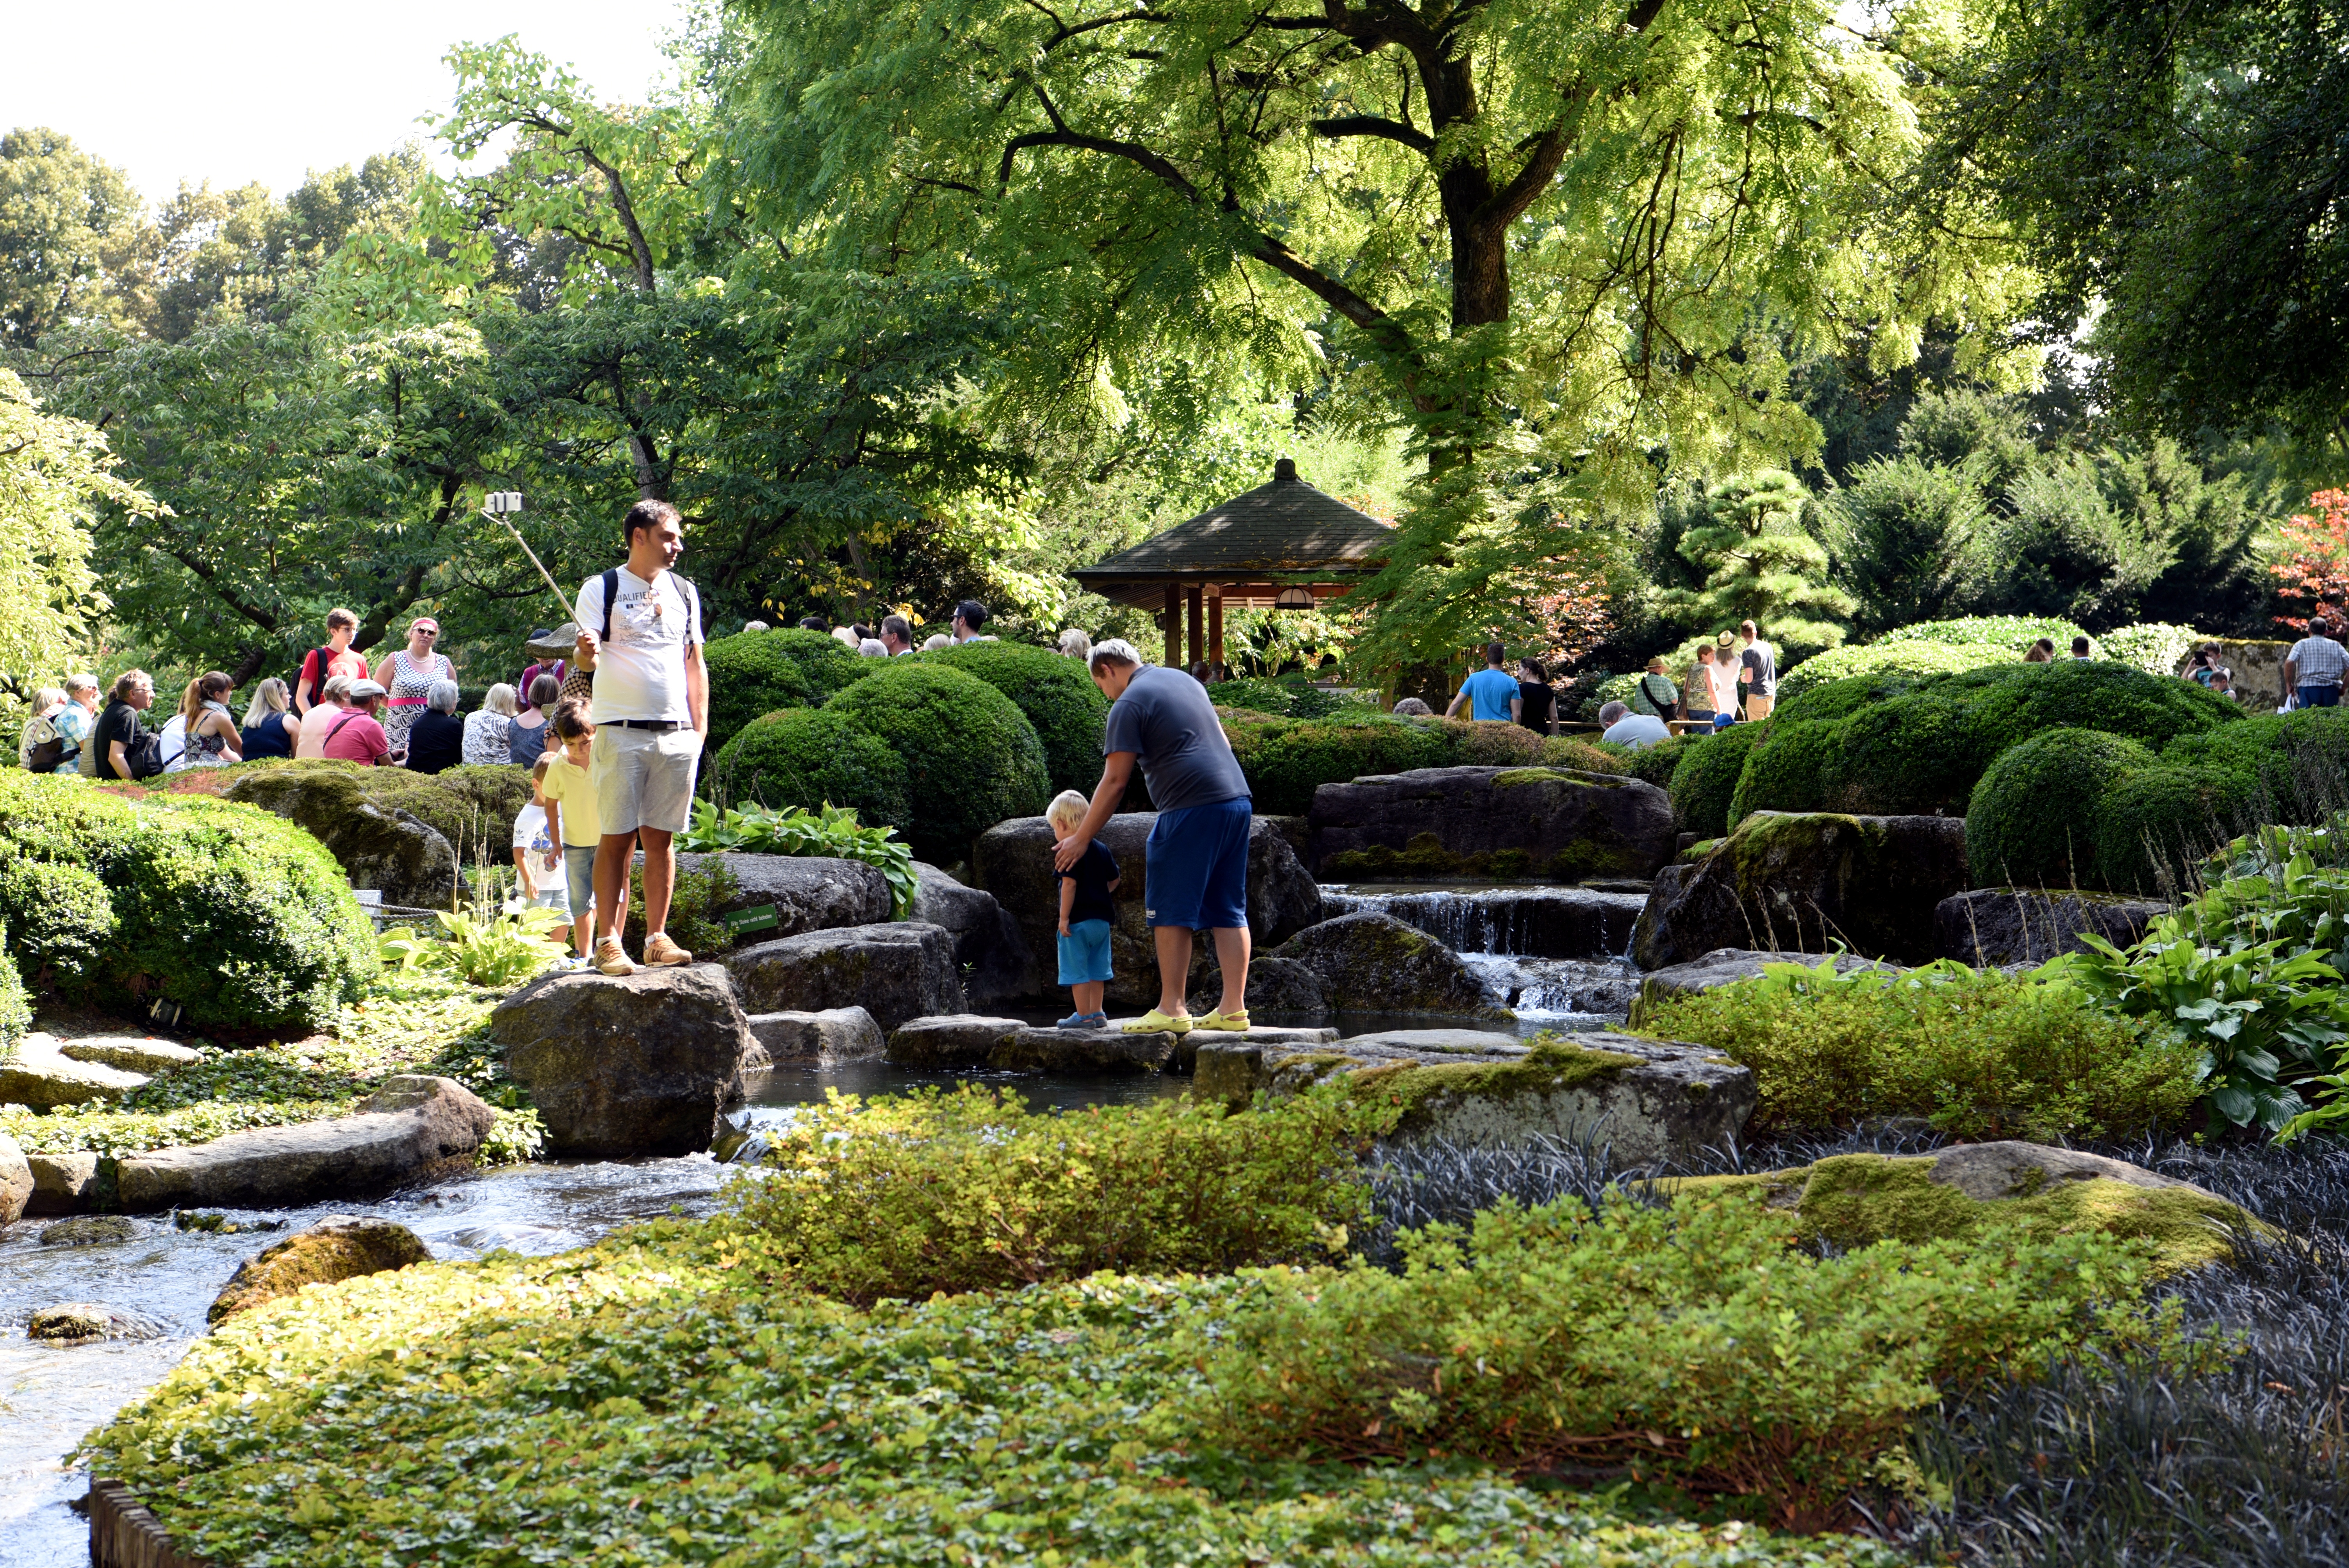 Im Botanischen Garten stehen viele Menschen an einem Bachlauf. Ein Vater läuft mit seinem Sohn über Steine, die im Bach stehen